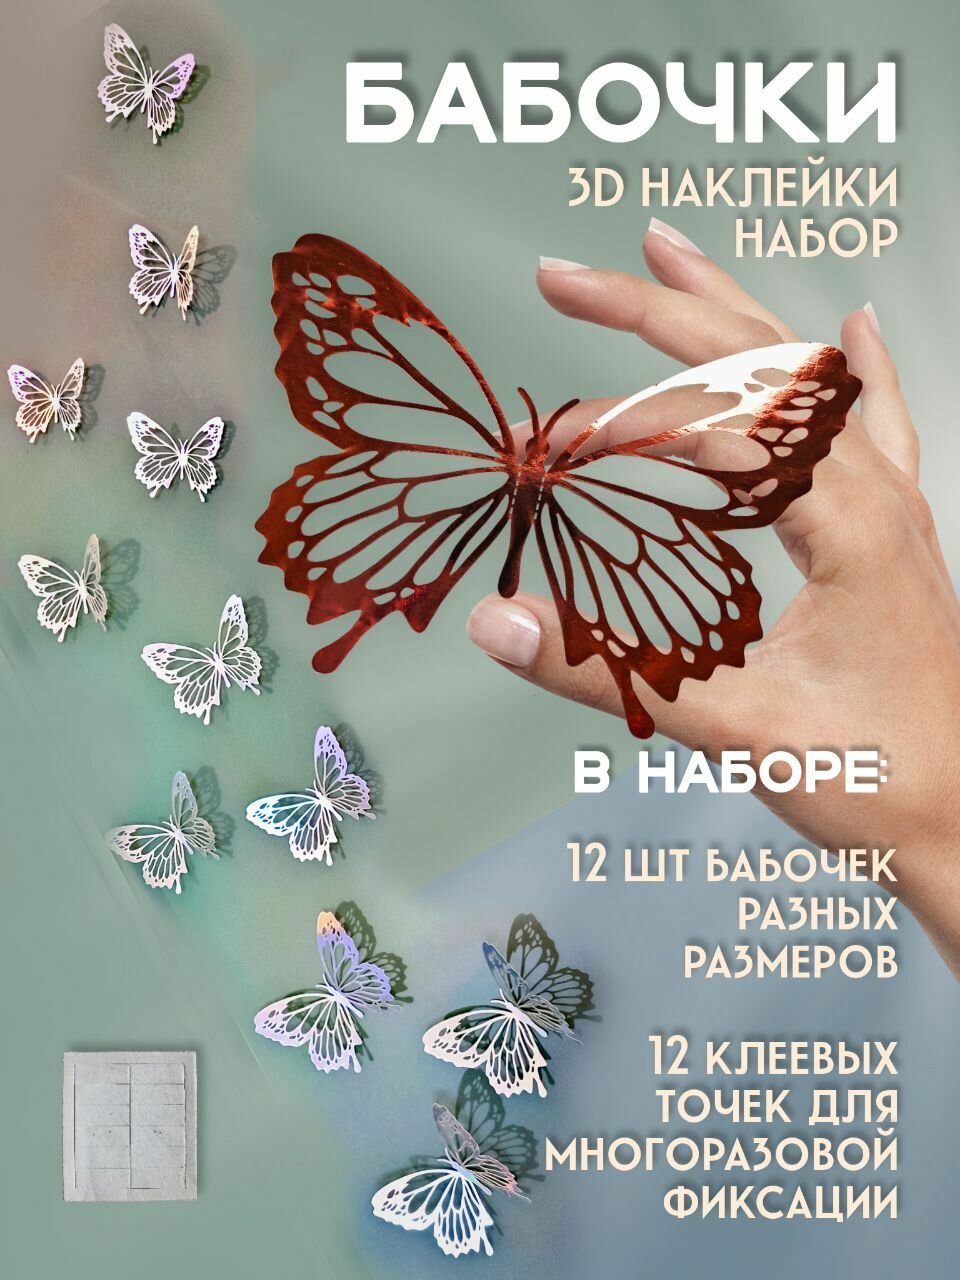 Декоративные интерьерные наклейки 3d Бабочки на стену, декор для дома интерьера бабочки 3Д